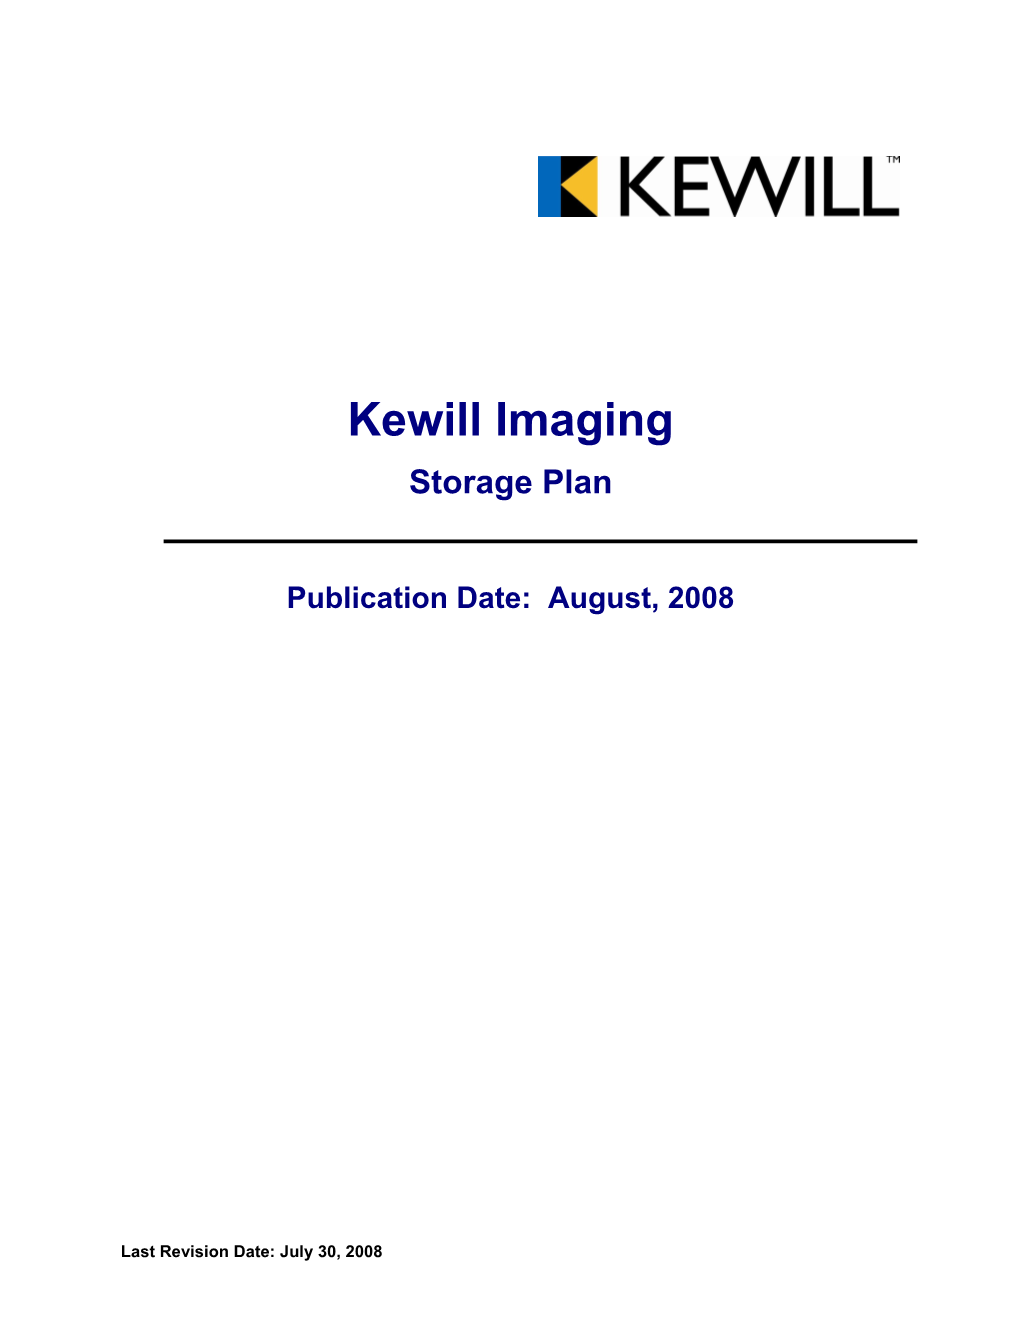 Kewill Imaging Storage Plan